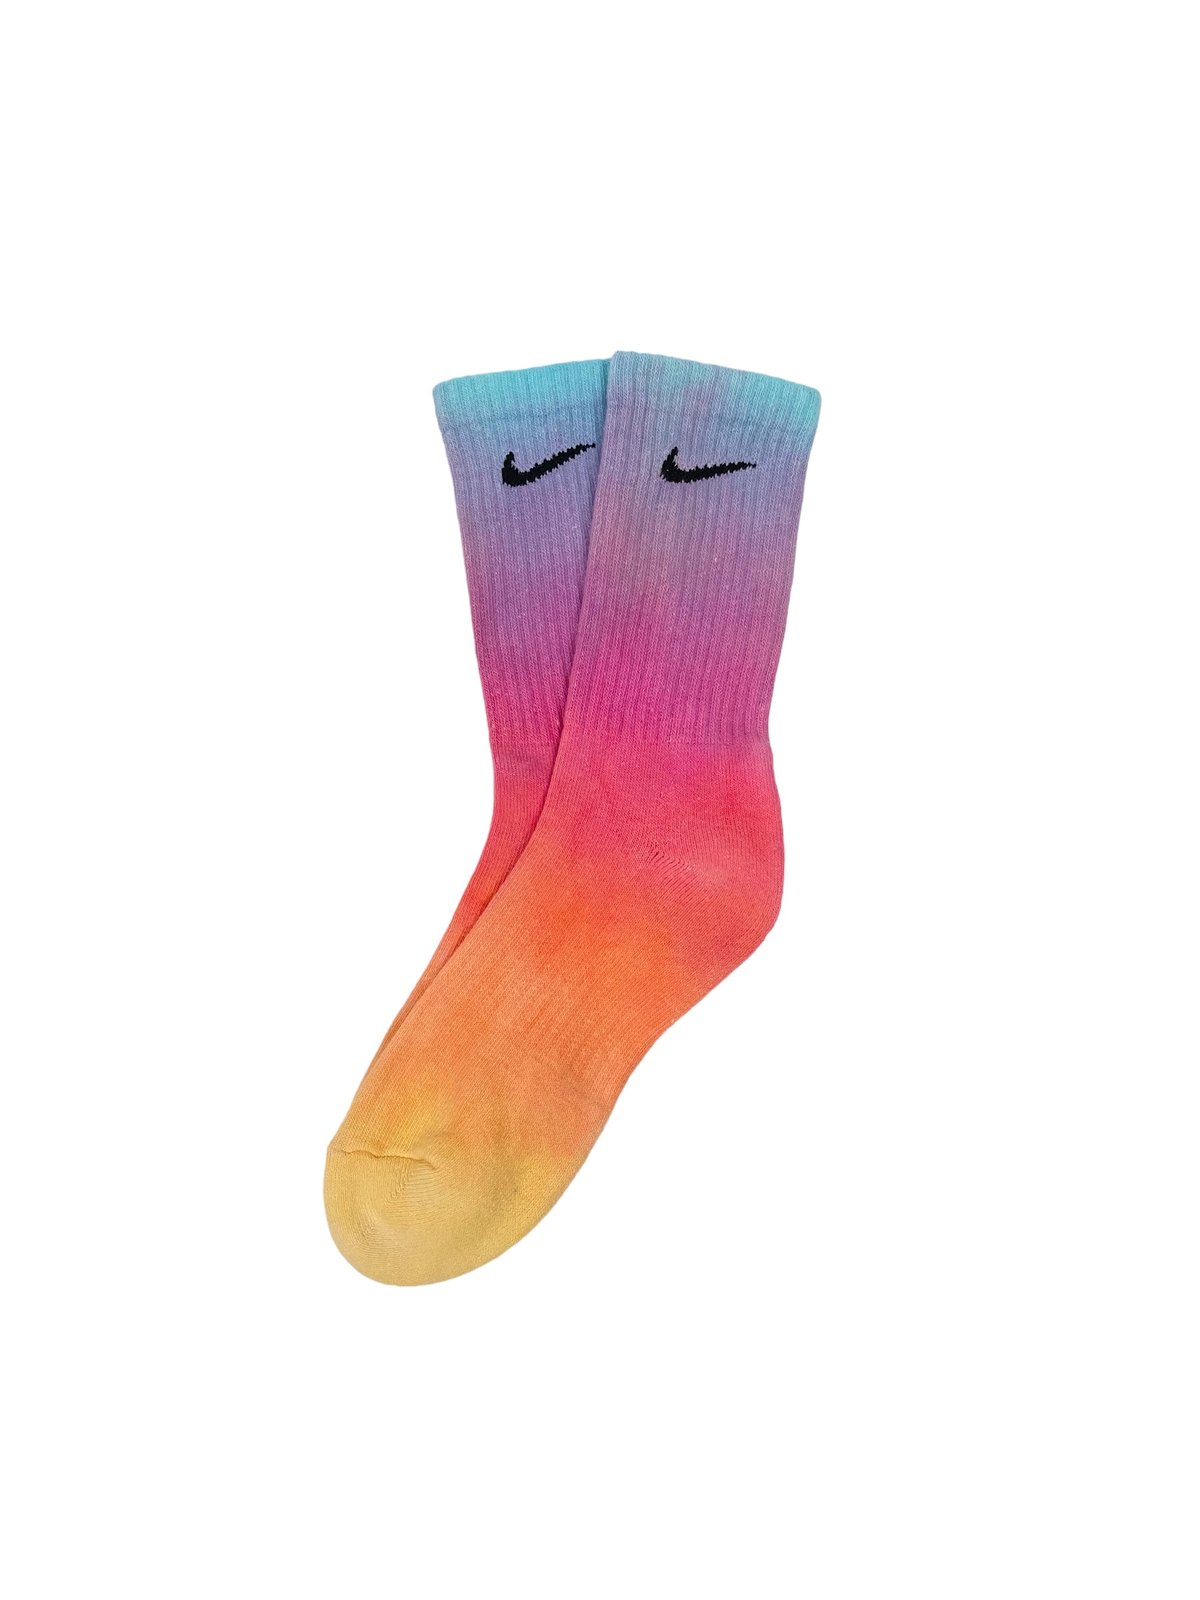 Image of Nike Socks Dyed Sunset Reverse